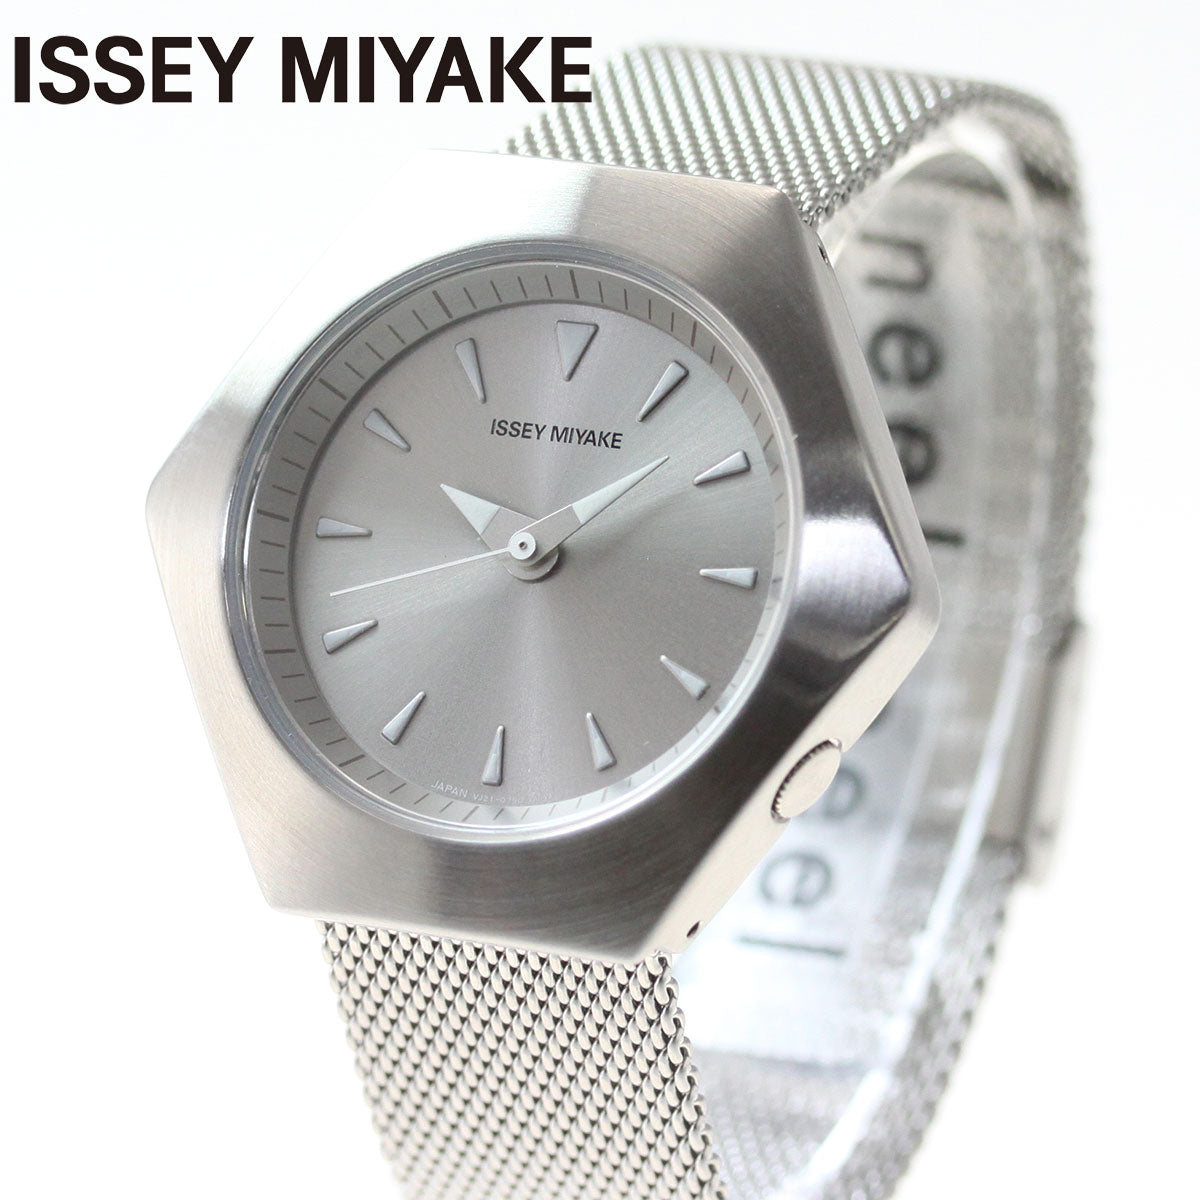 イッセイミヤケ ISSEY MIYAKE 腕時計 メンズ レディース ロク ROKU コンスタンティン・グルチッチ氏 コラボモデル NYAM001